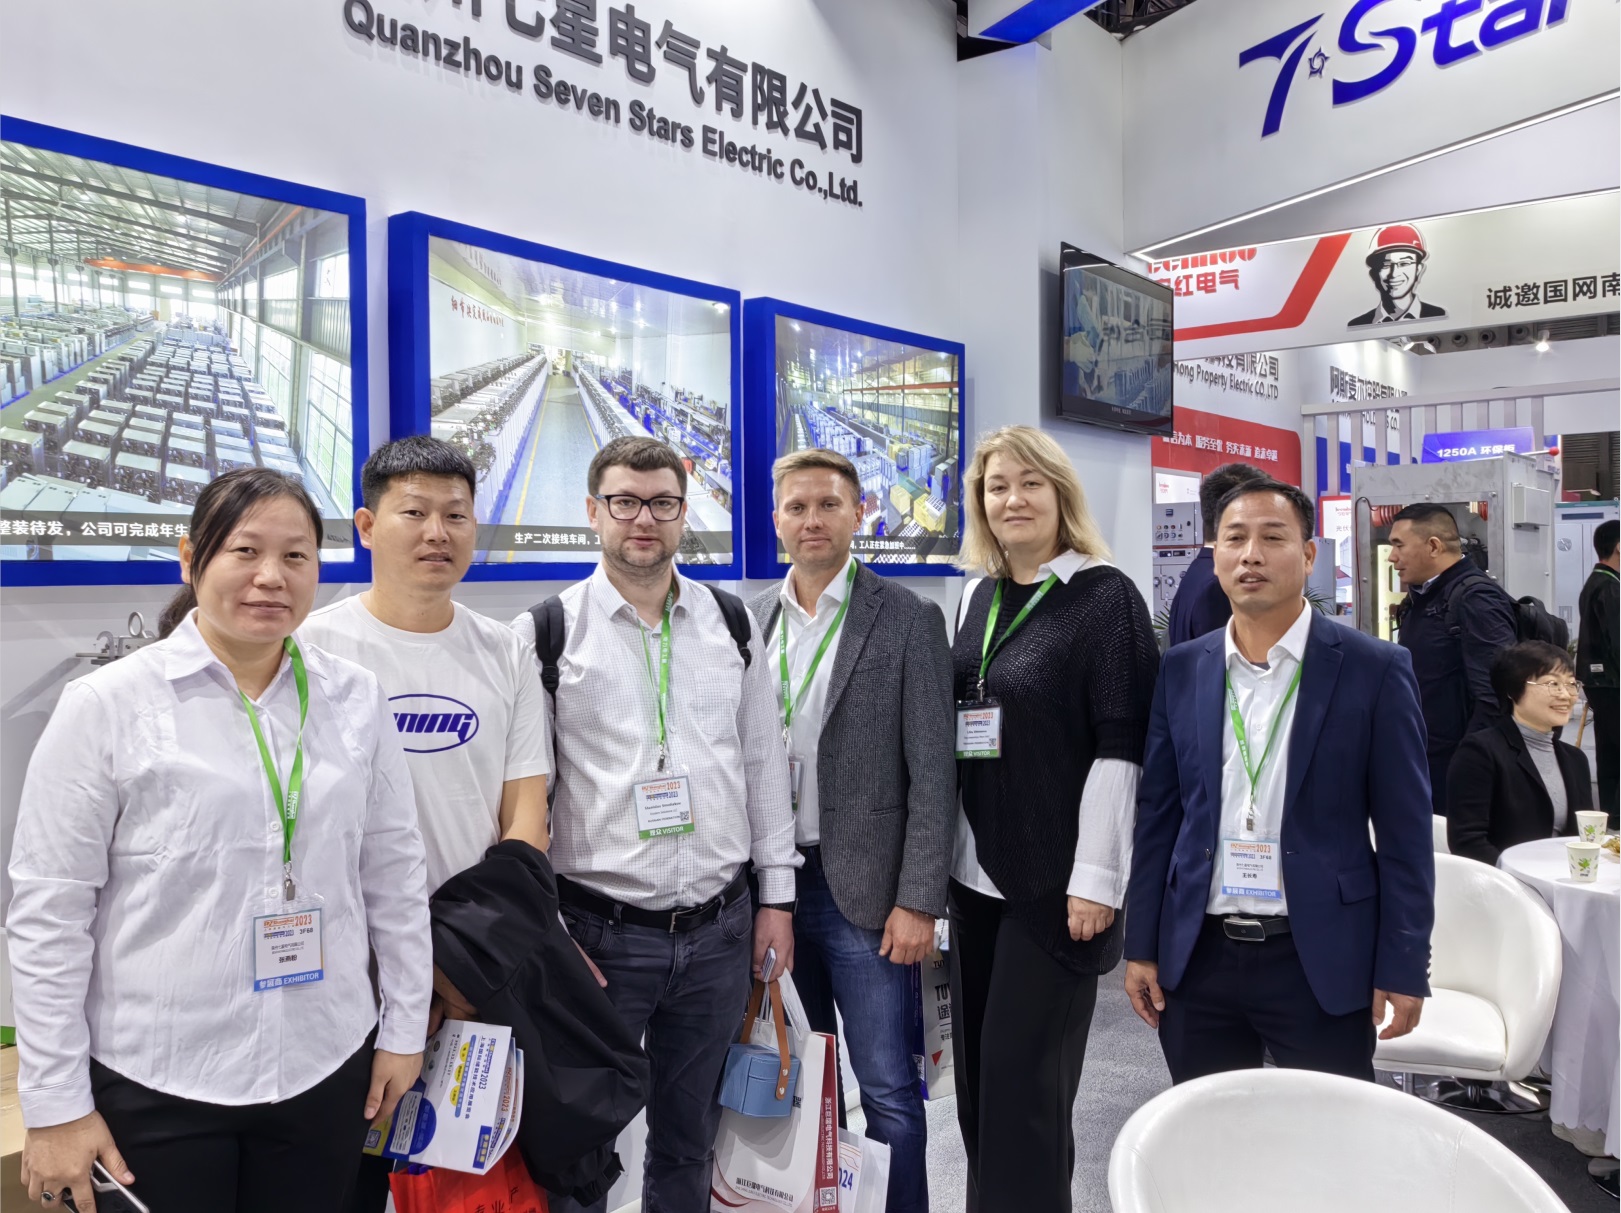 Выставка EP Power компании Seven Star Electric Co., Ltd. в Шанхае прошла с полным успехом.